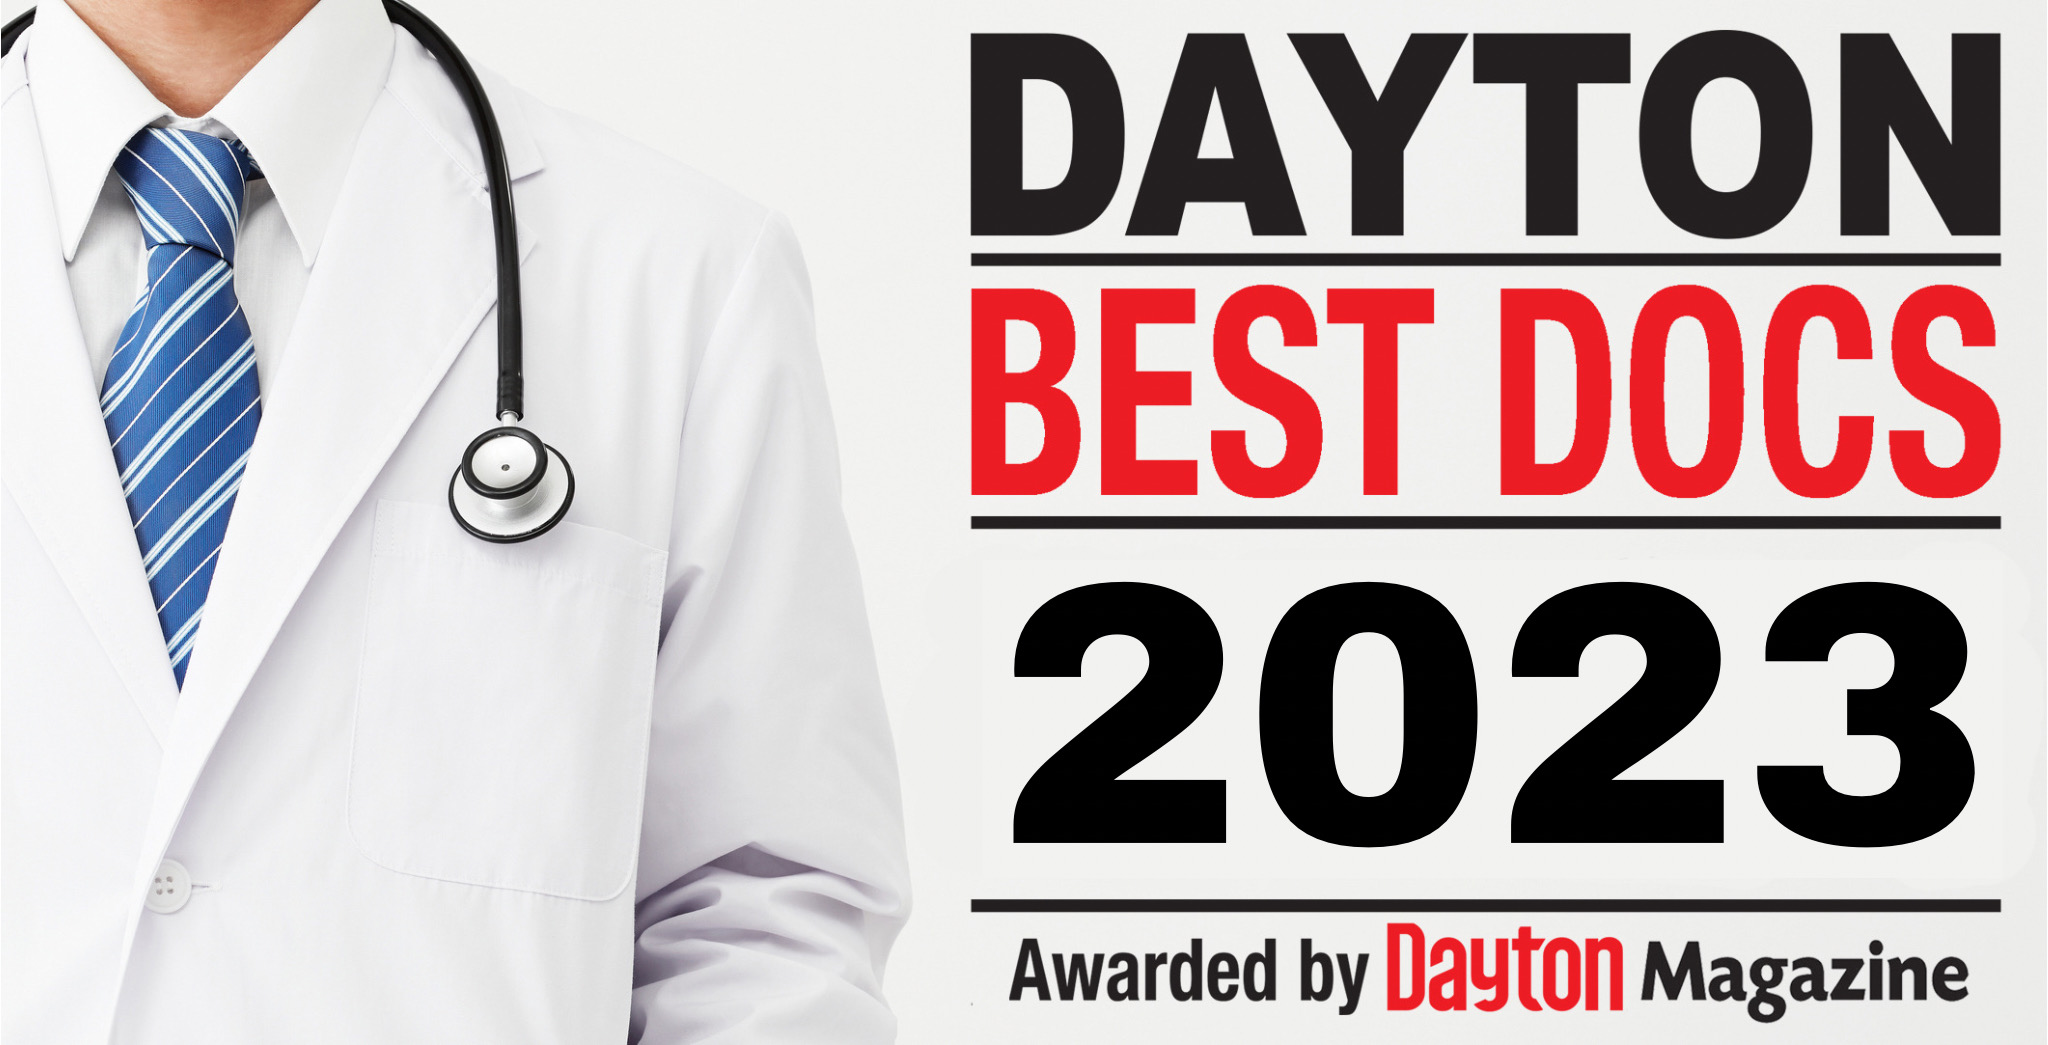 Dayton Best Docs Dayton Magazine